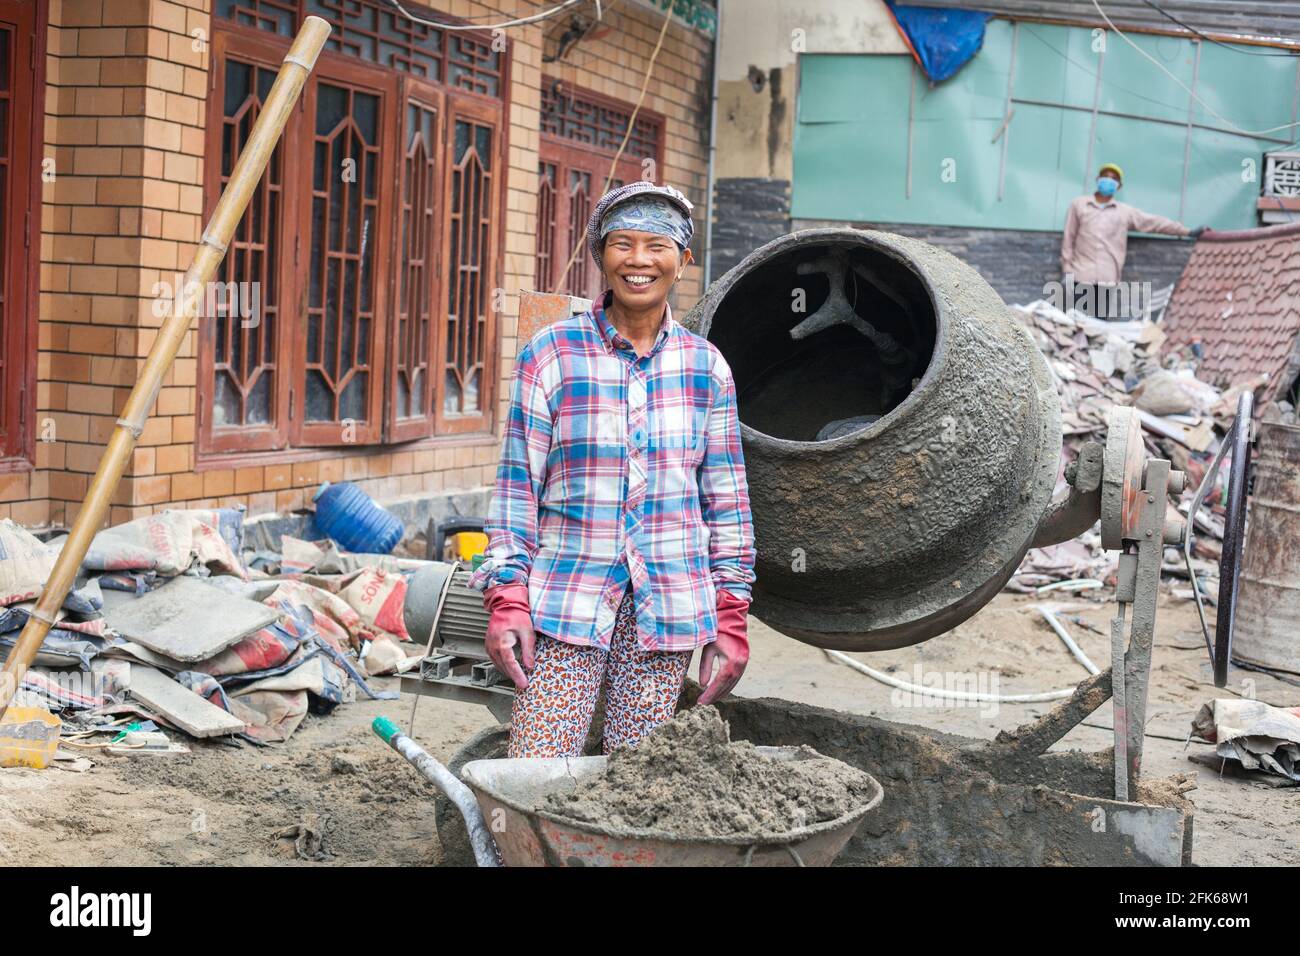 Fröhliche vietnamesische Handarbeiterin, die Beton im Zementmischer auf der Baustelle, Hoi an, Vietnam, mischt Stockfoto